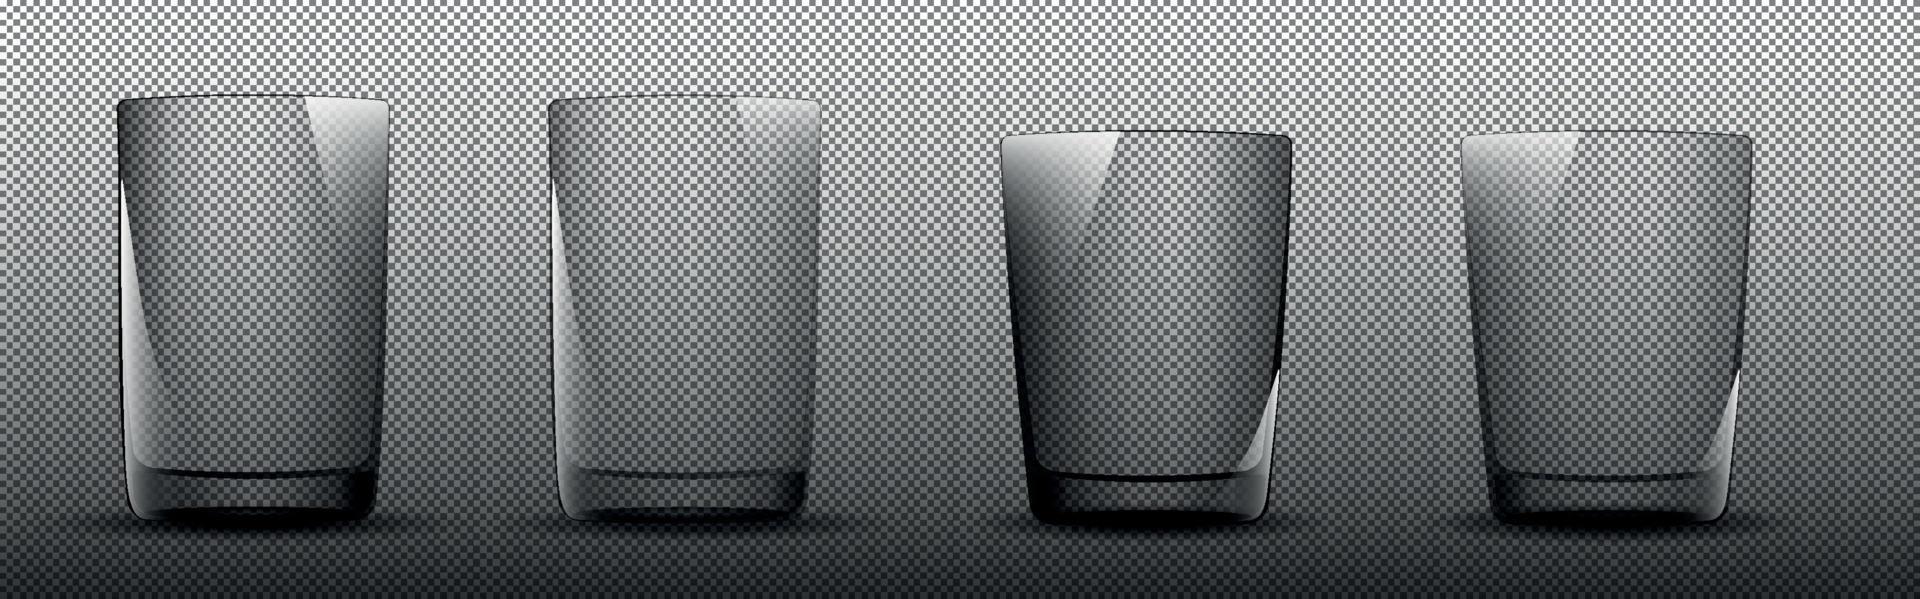 realistisch einstellen von Glas leeren Gläser, anders Größen auf ein transparent Hintergrund. 3d Glaswaren zum Kaffee, Tee, Saft, Bar trinken. Attrappe, Lehrmodell, Simulation von Doppelwandig Brille zum Design, Restaurant, Cafe vektor